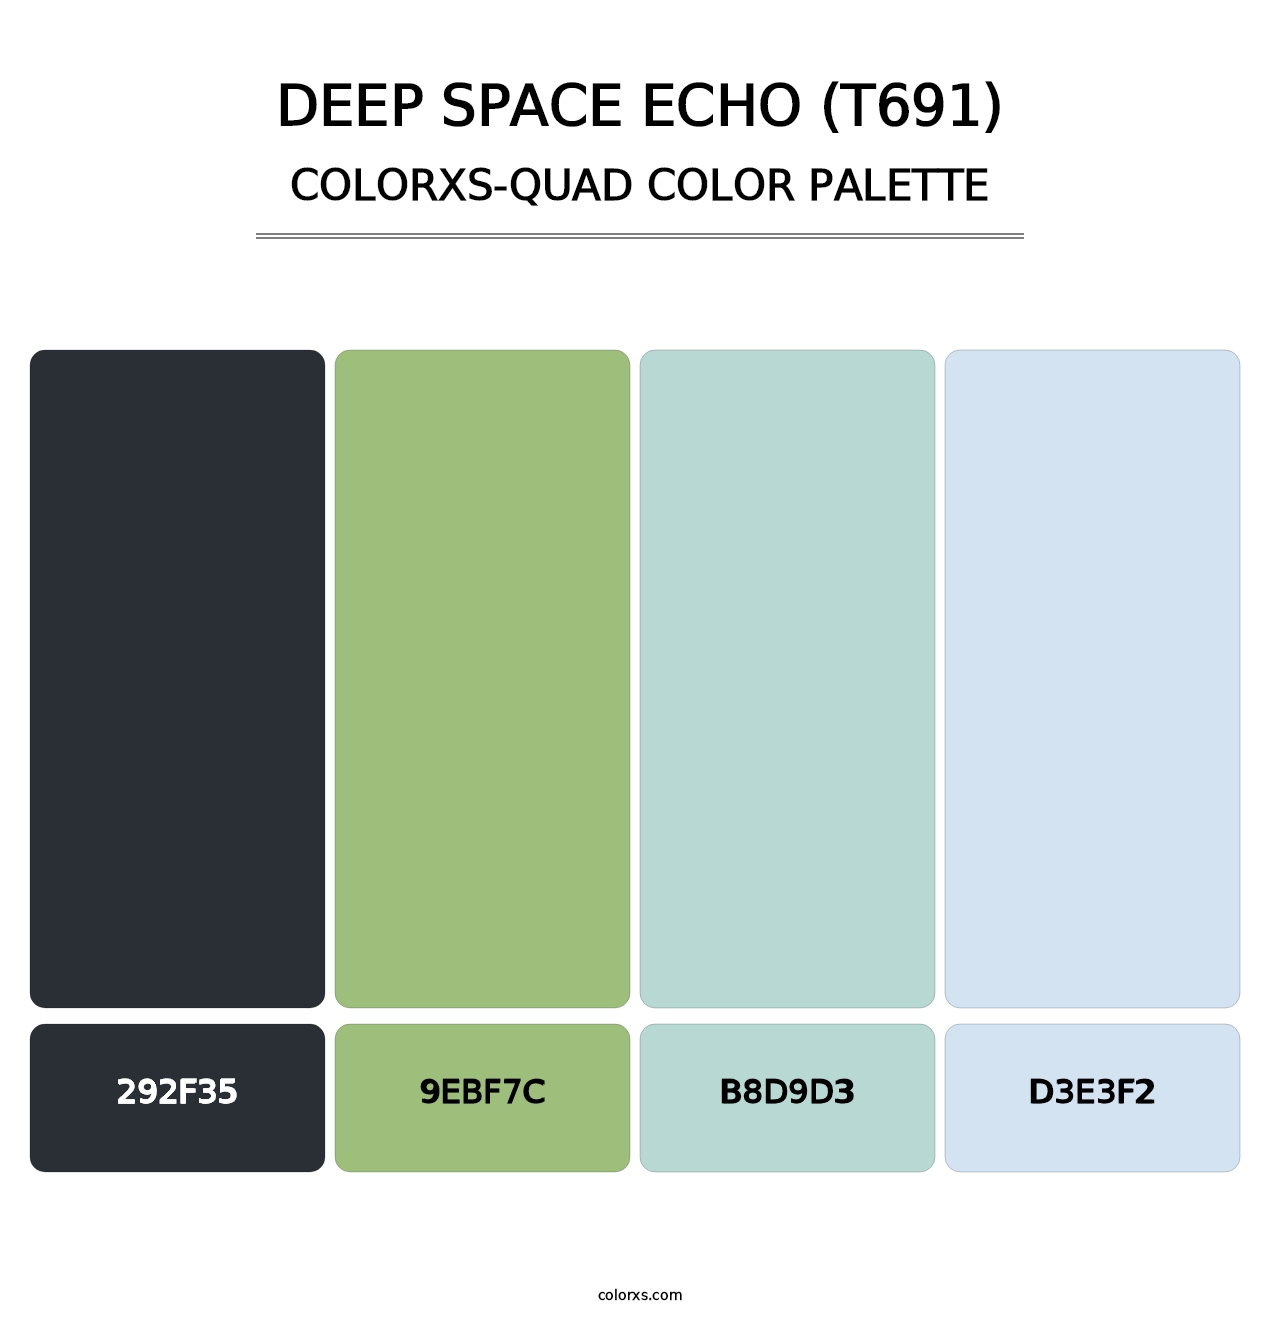 Deep Space Echo (T691) - Colorxs Quad Palette